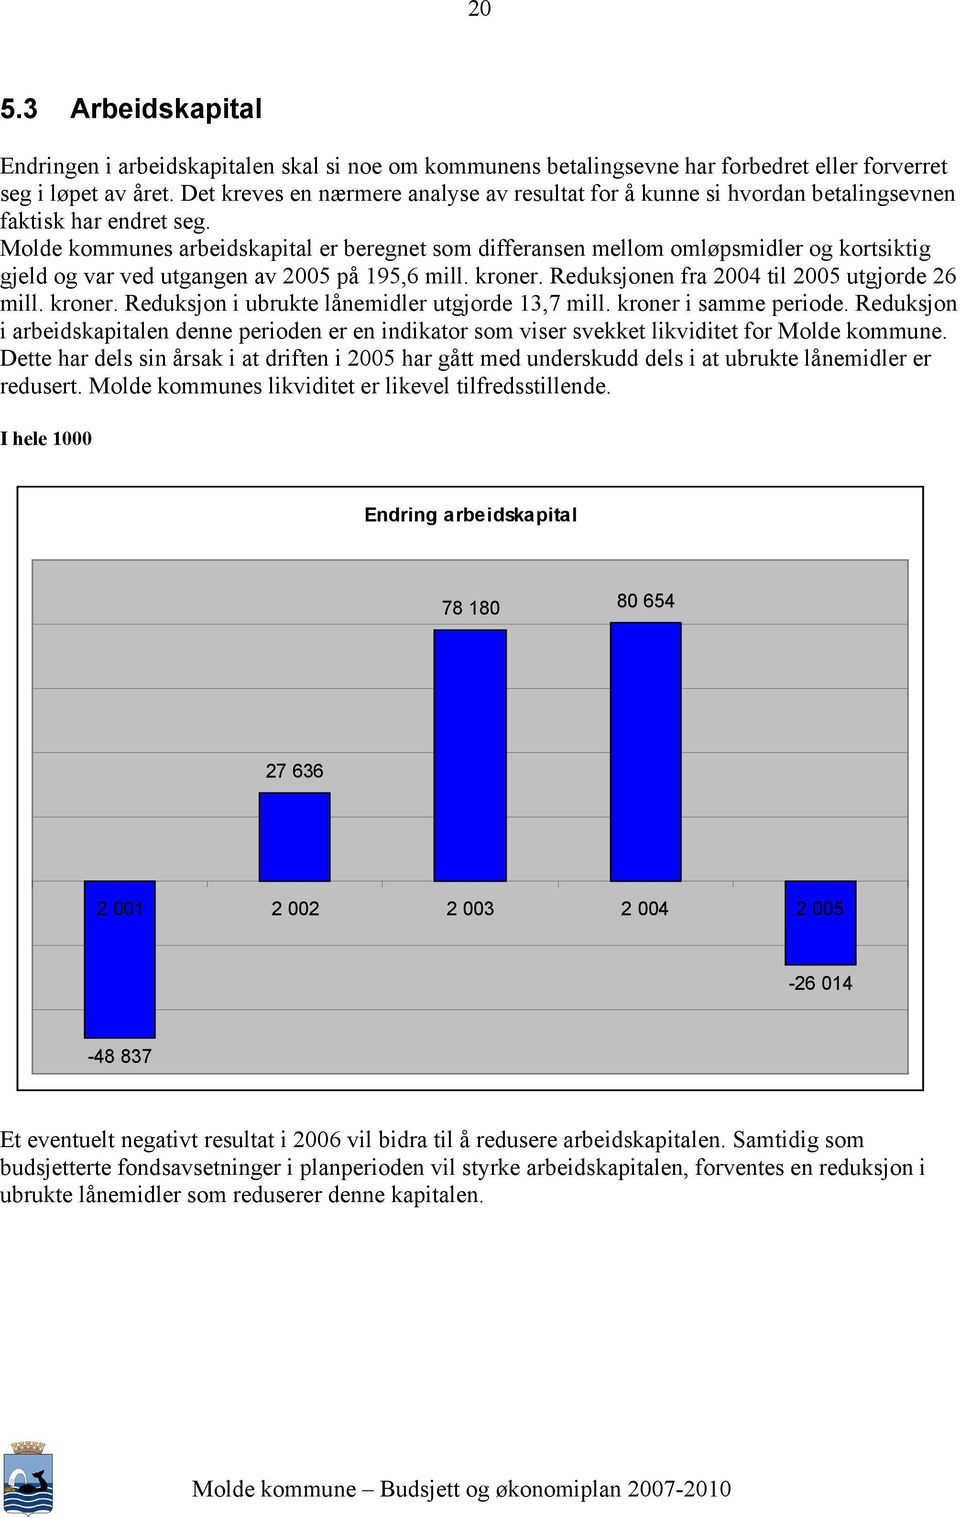 Molde kommunes arbeidskapital er beregnet som differansen mellom omløpsmidler og kortsiktig gjeld og var ved utgangen av 2005 på 195,6 mill. kroner. Reduksjonen fra 2004 til 2005 utgjorde 26 mill.